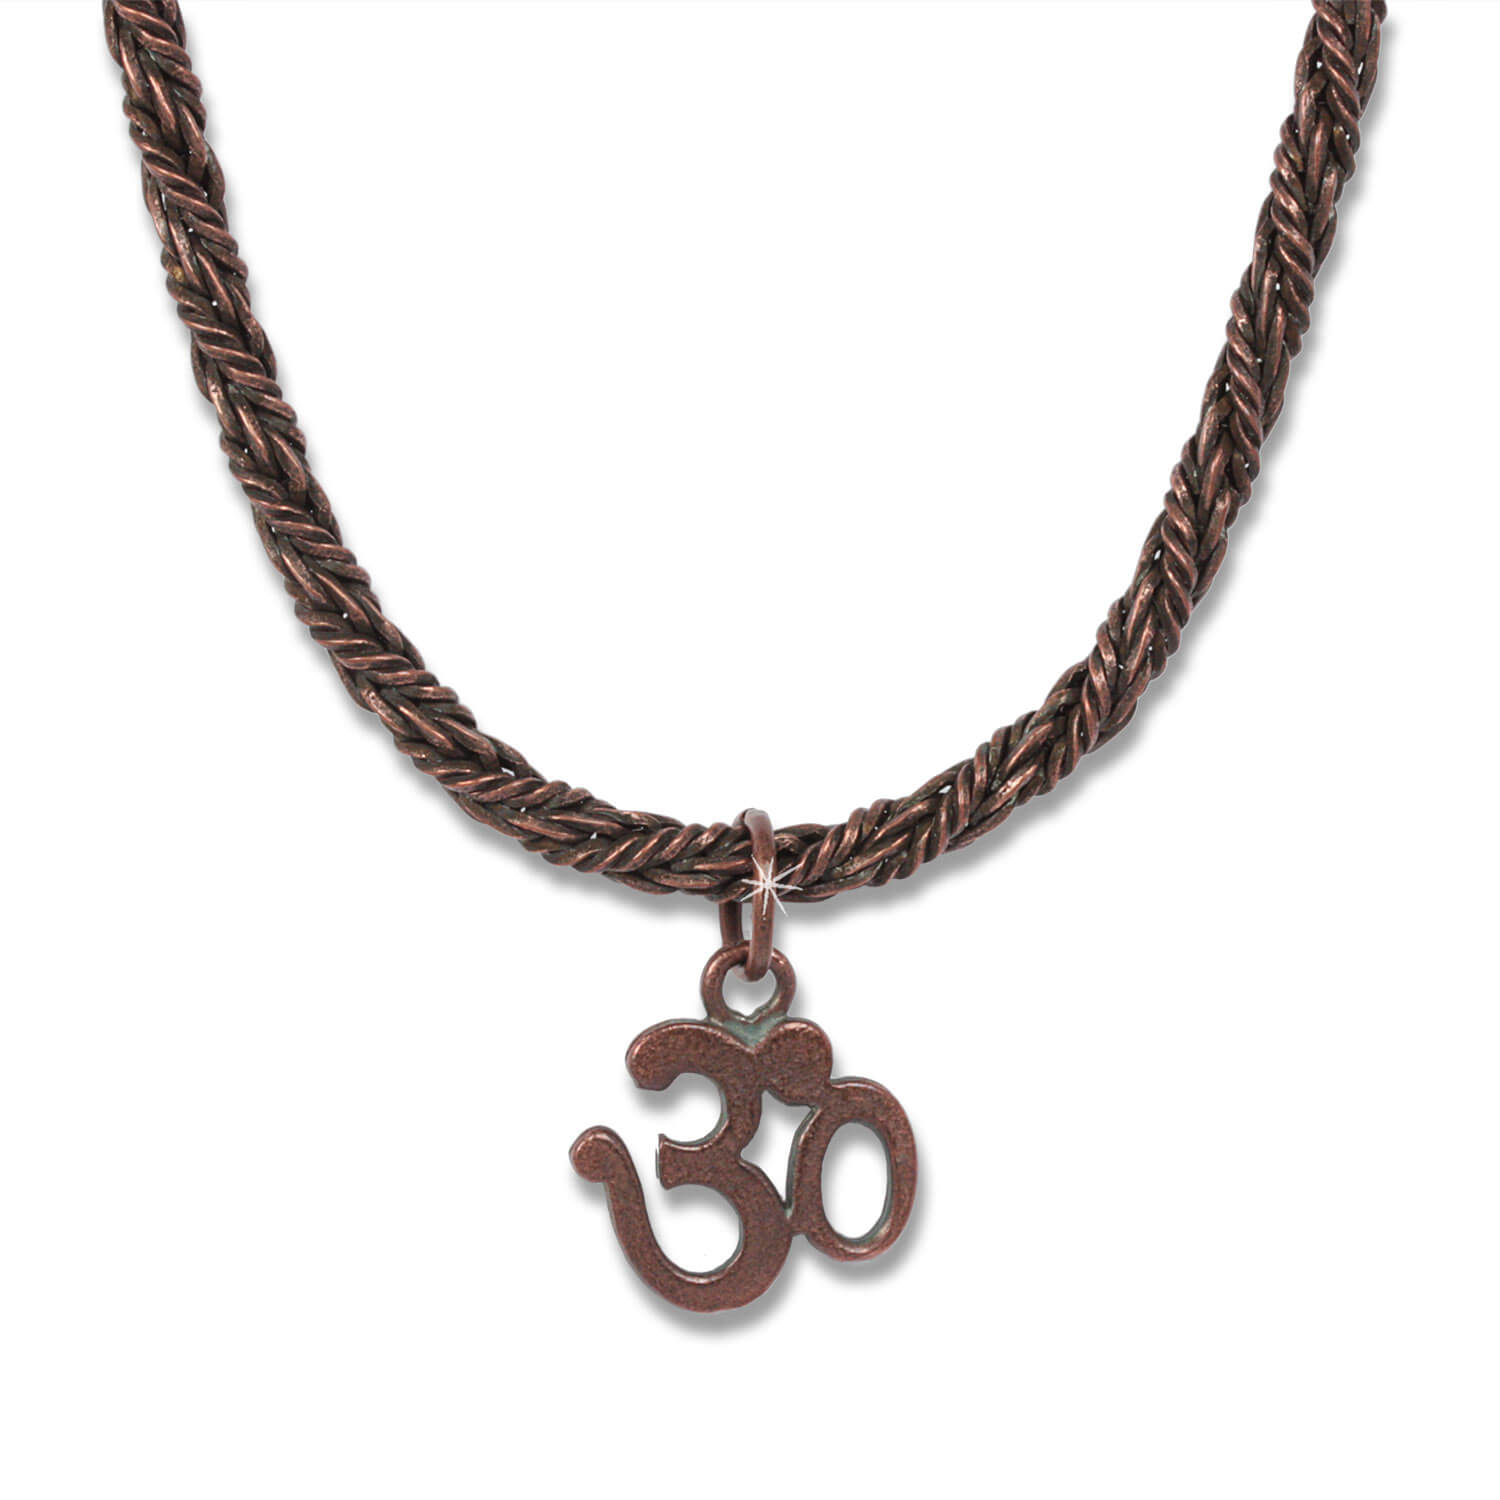 Copper OM Königskette - Indian Symbols Männer-Kette, 45 cm lang